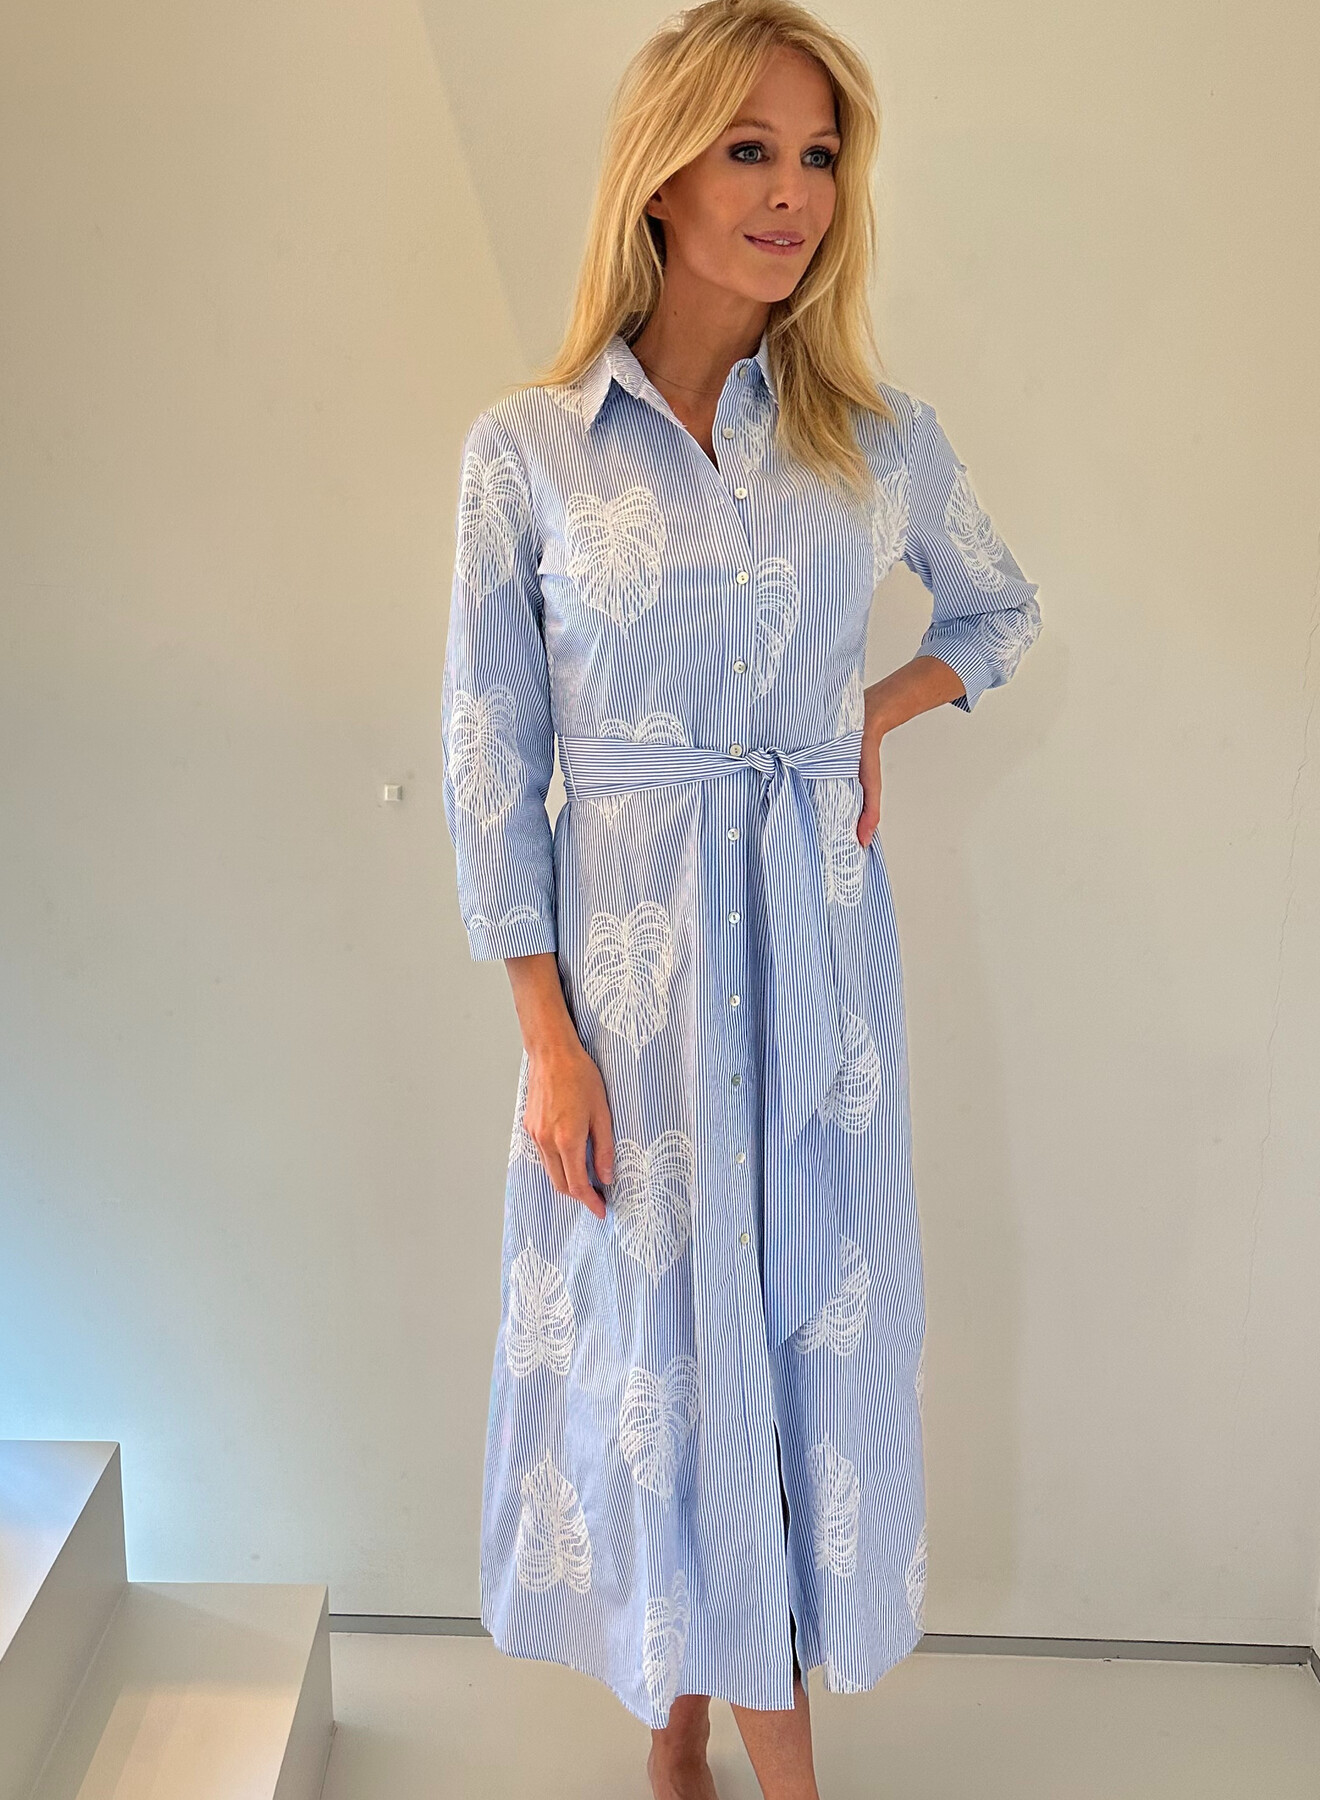 Kady blauw wit geborduurde jurk